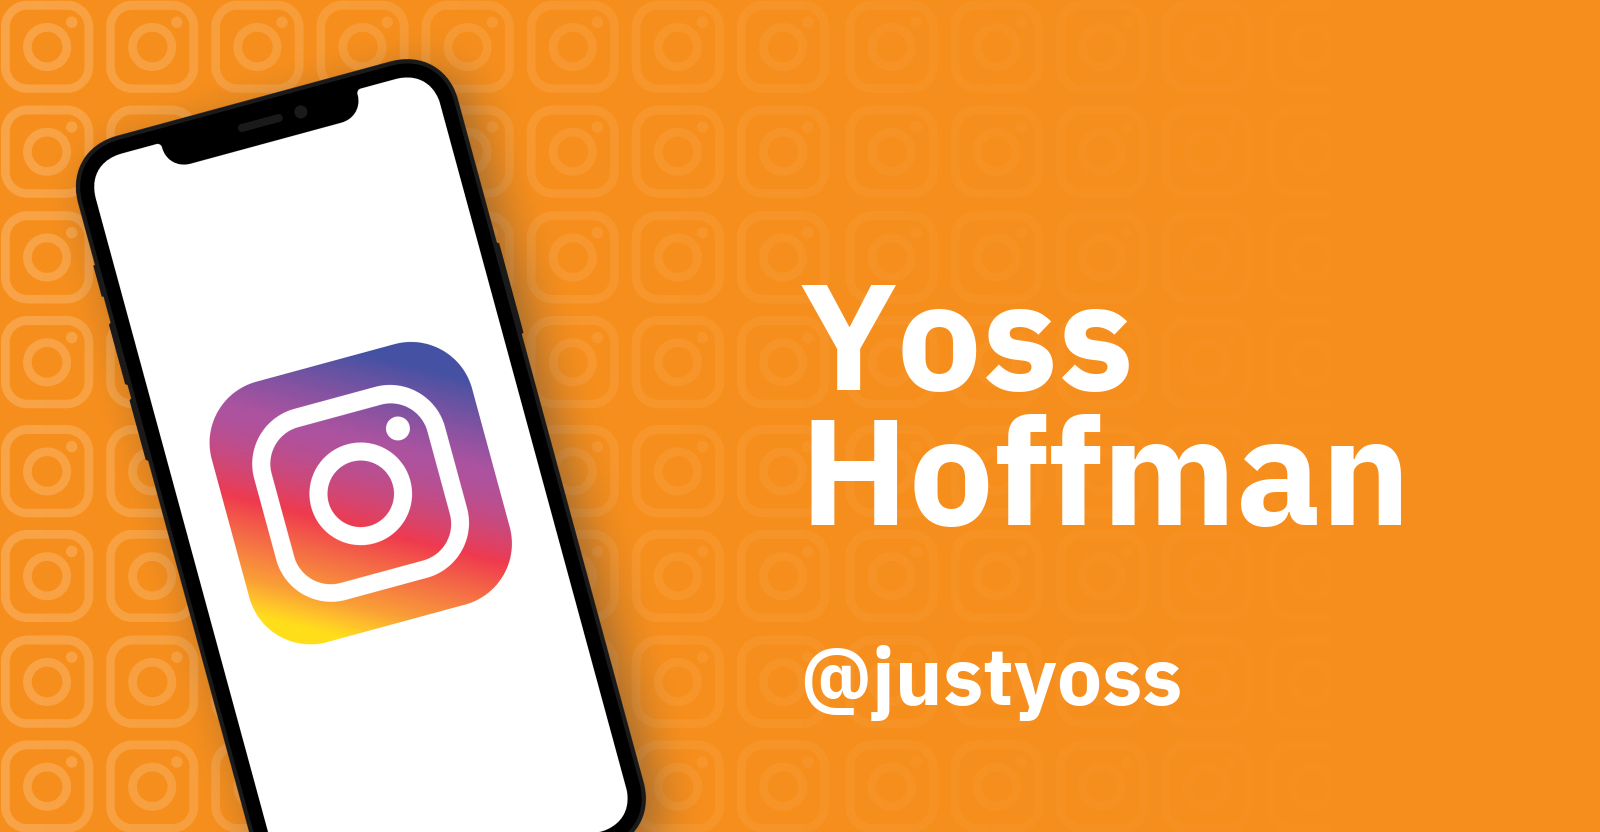 Las últimas 5 Fotos De Yoss Hoffman Que Arrasan En Su Perfil De Instagram Infobae